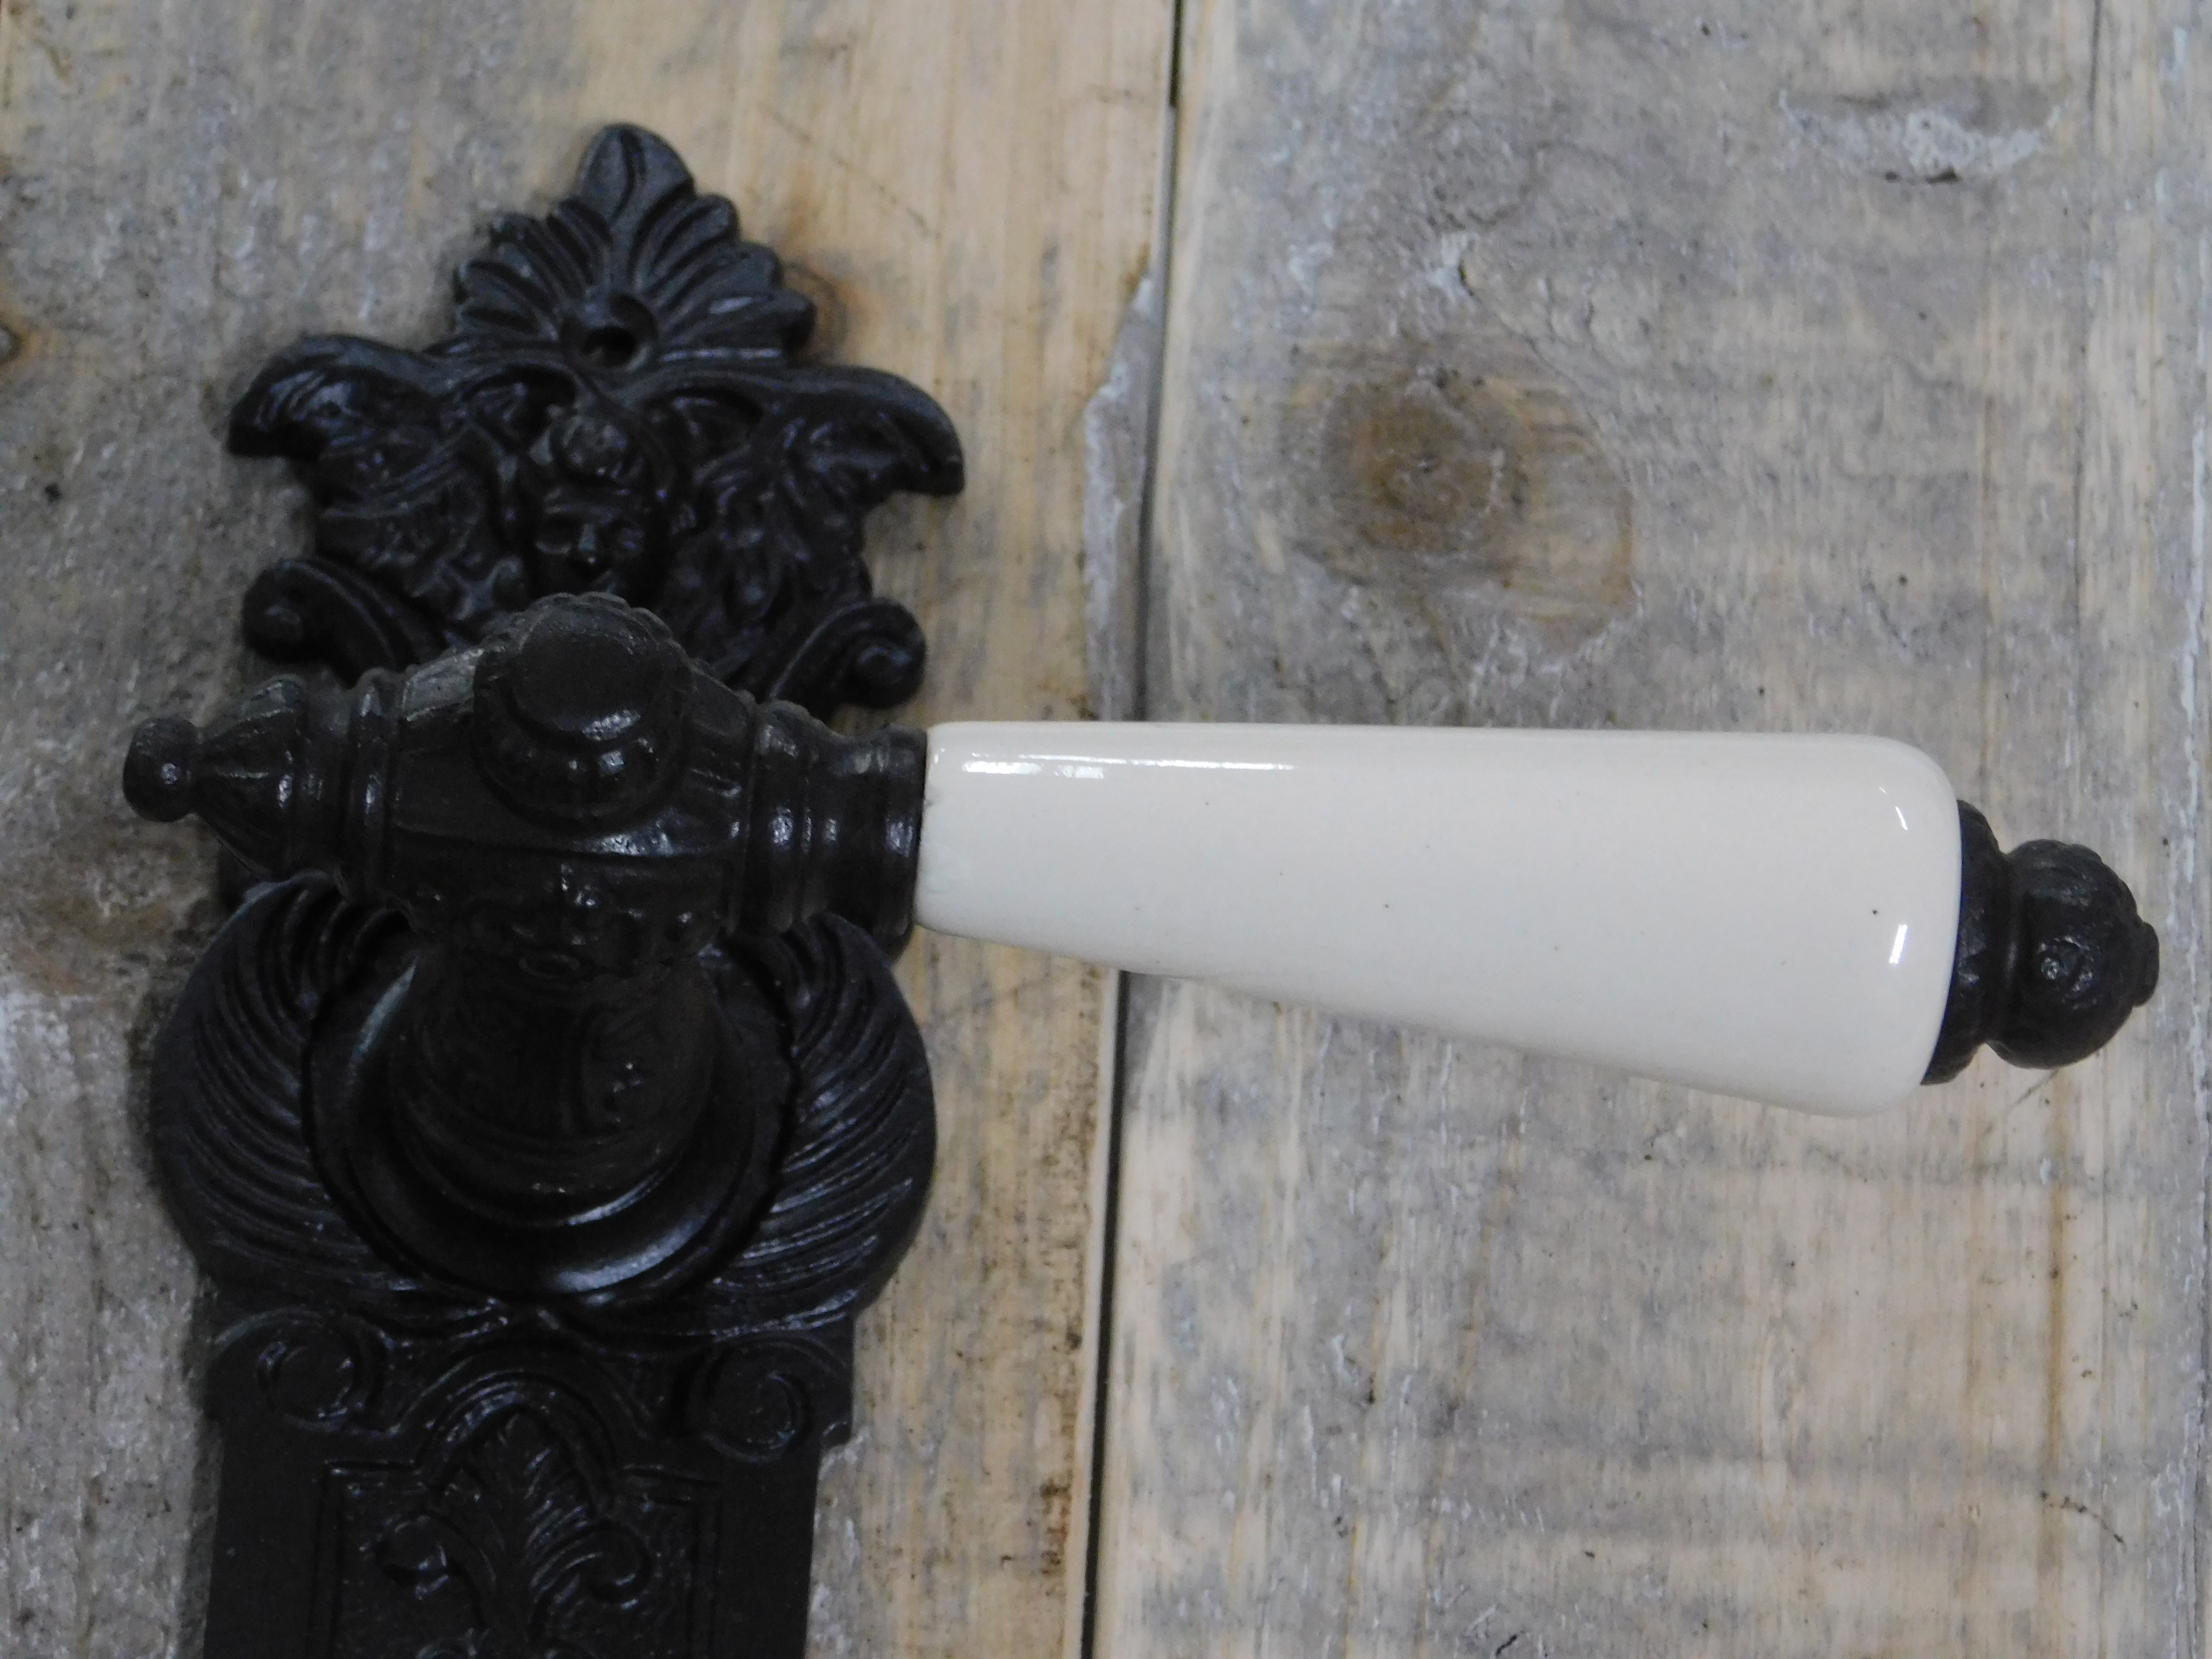 Deurset: deurknop met Nippon porseleinen handvat in crème wit + 1 + 2 Belli deurknop backplates engel, antiek ijzer bruin, de kleur is zeer donker bruine antiek. pz92.